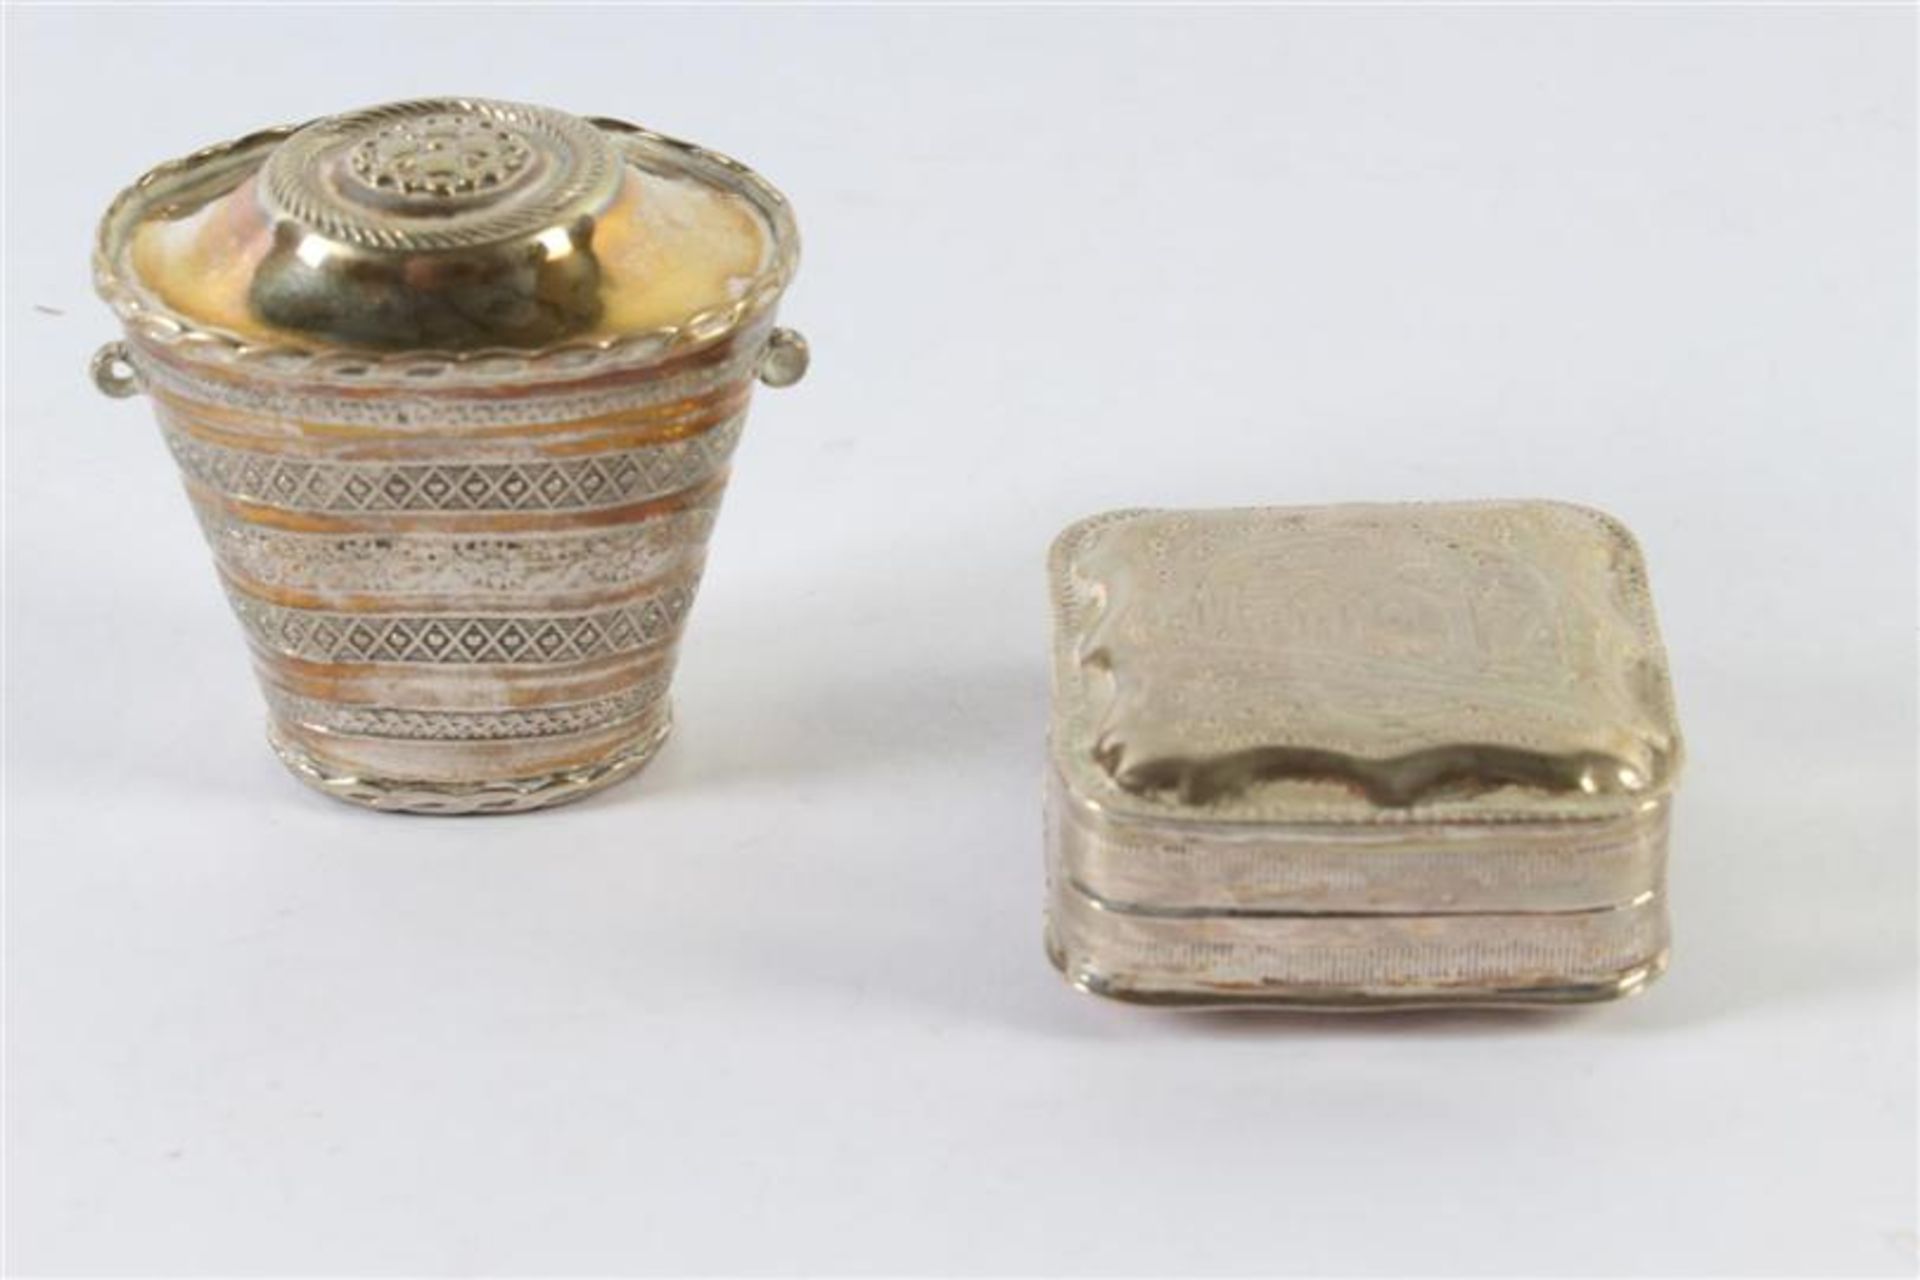 Zilveren lodereindoosje in mandvorm en een zilveren pillendoosje. Gewicht: 34 g.